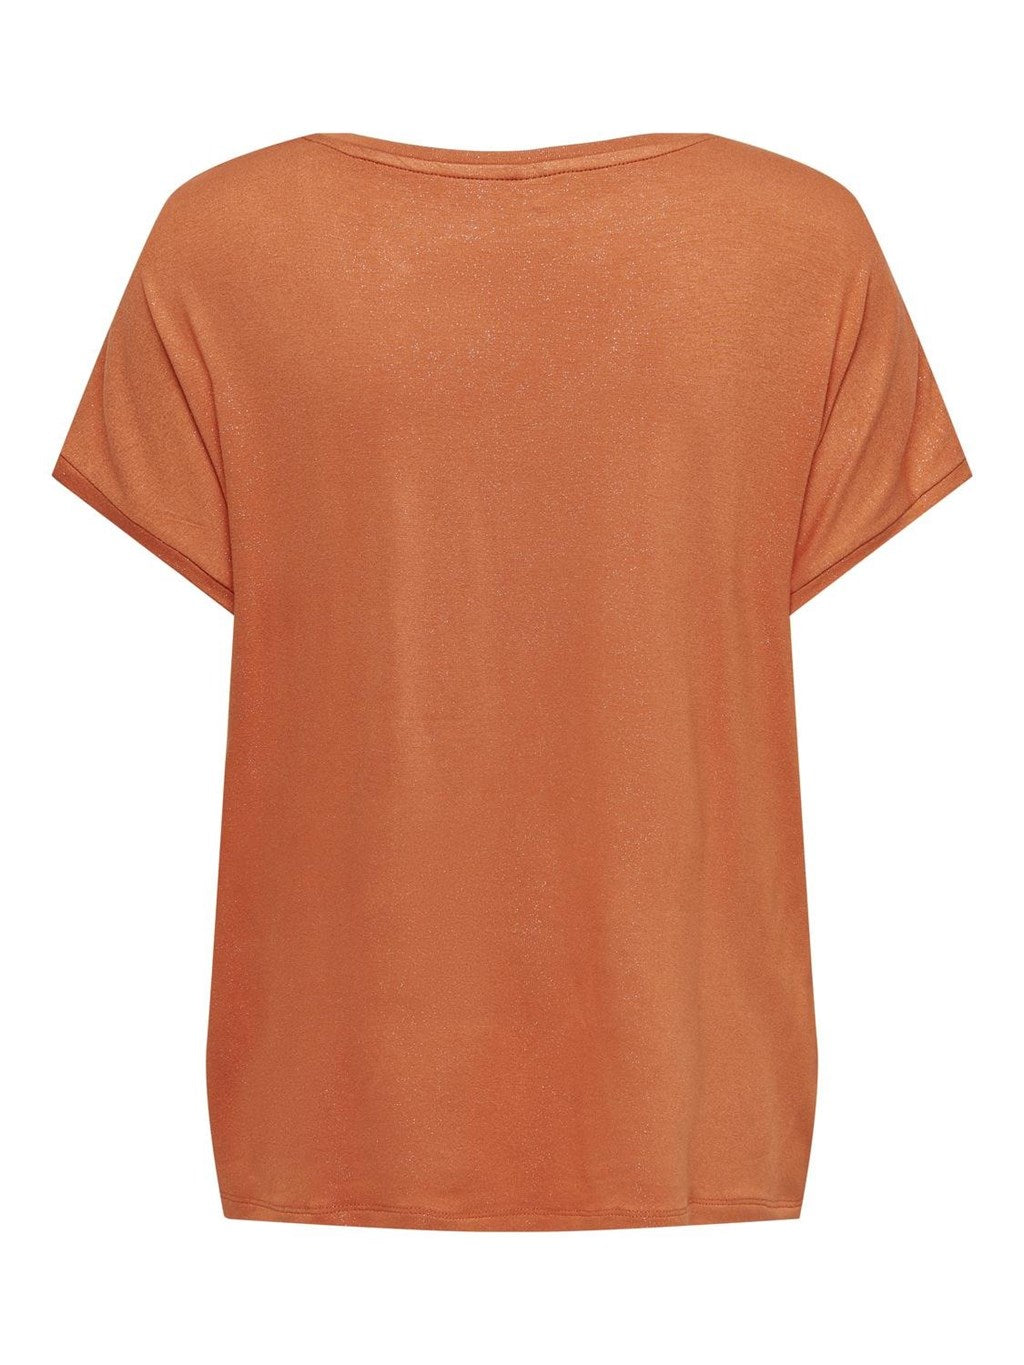 Orange Only t-shirt for women